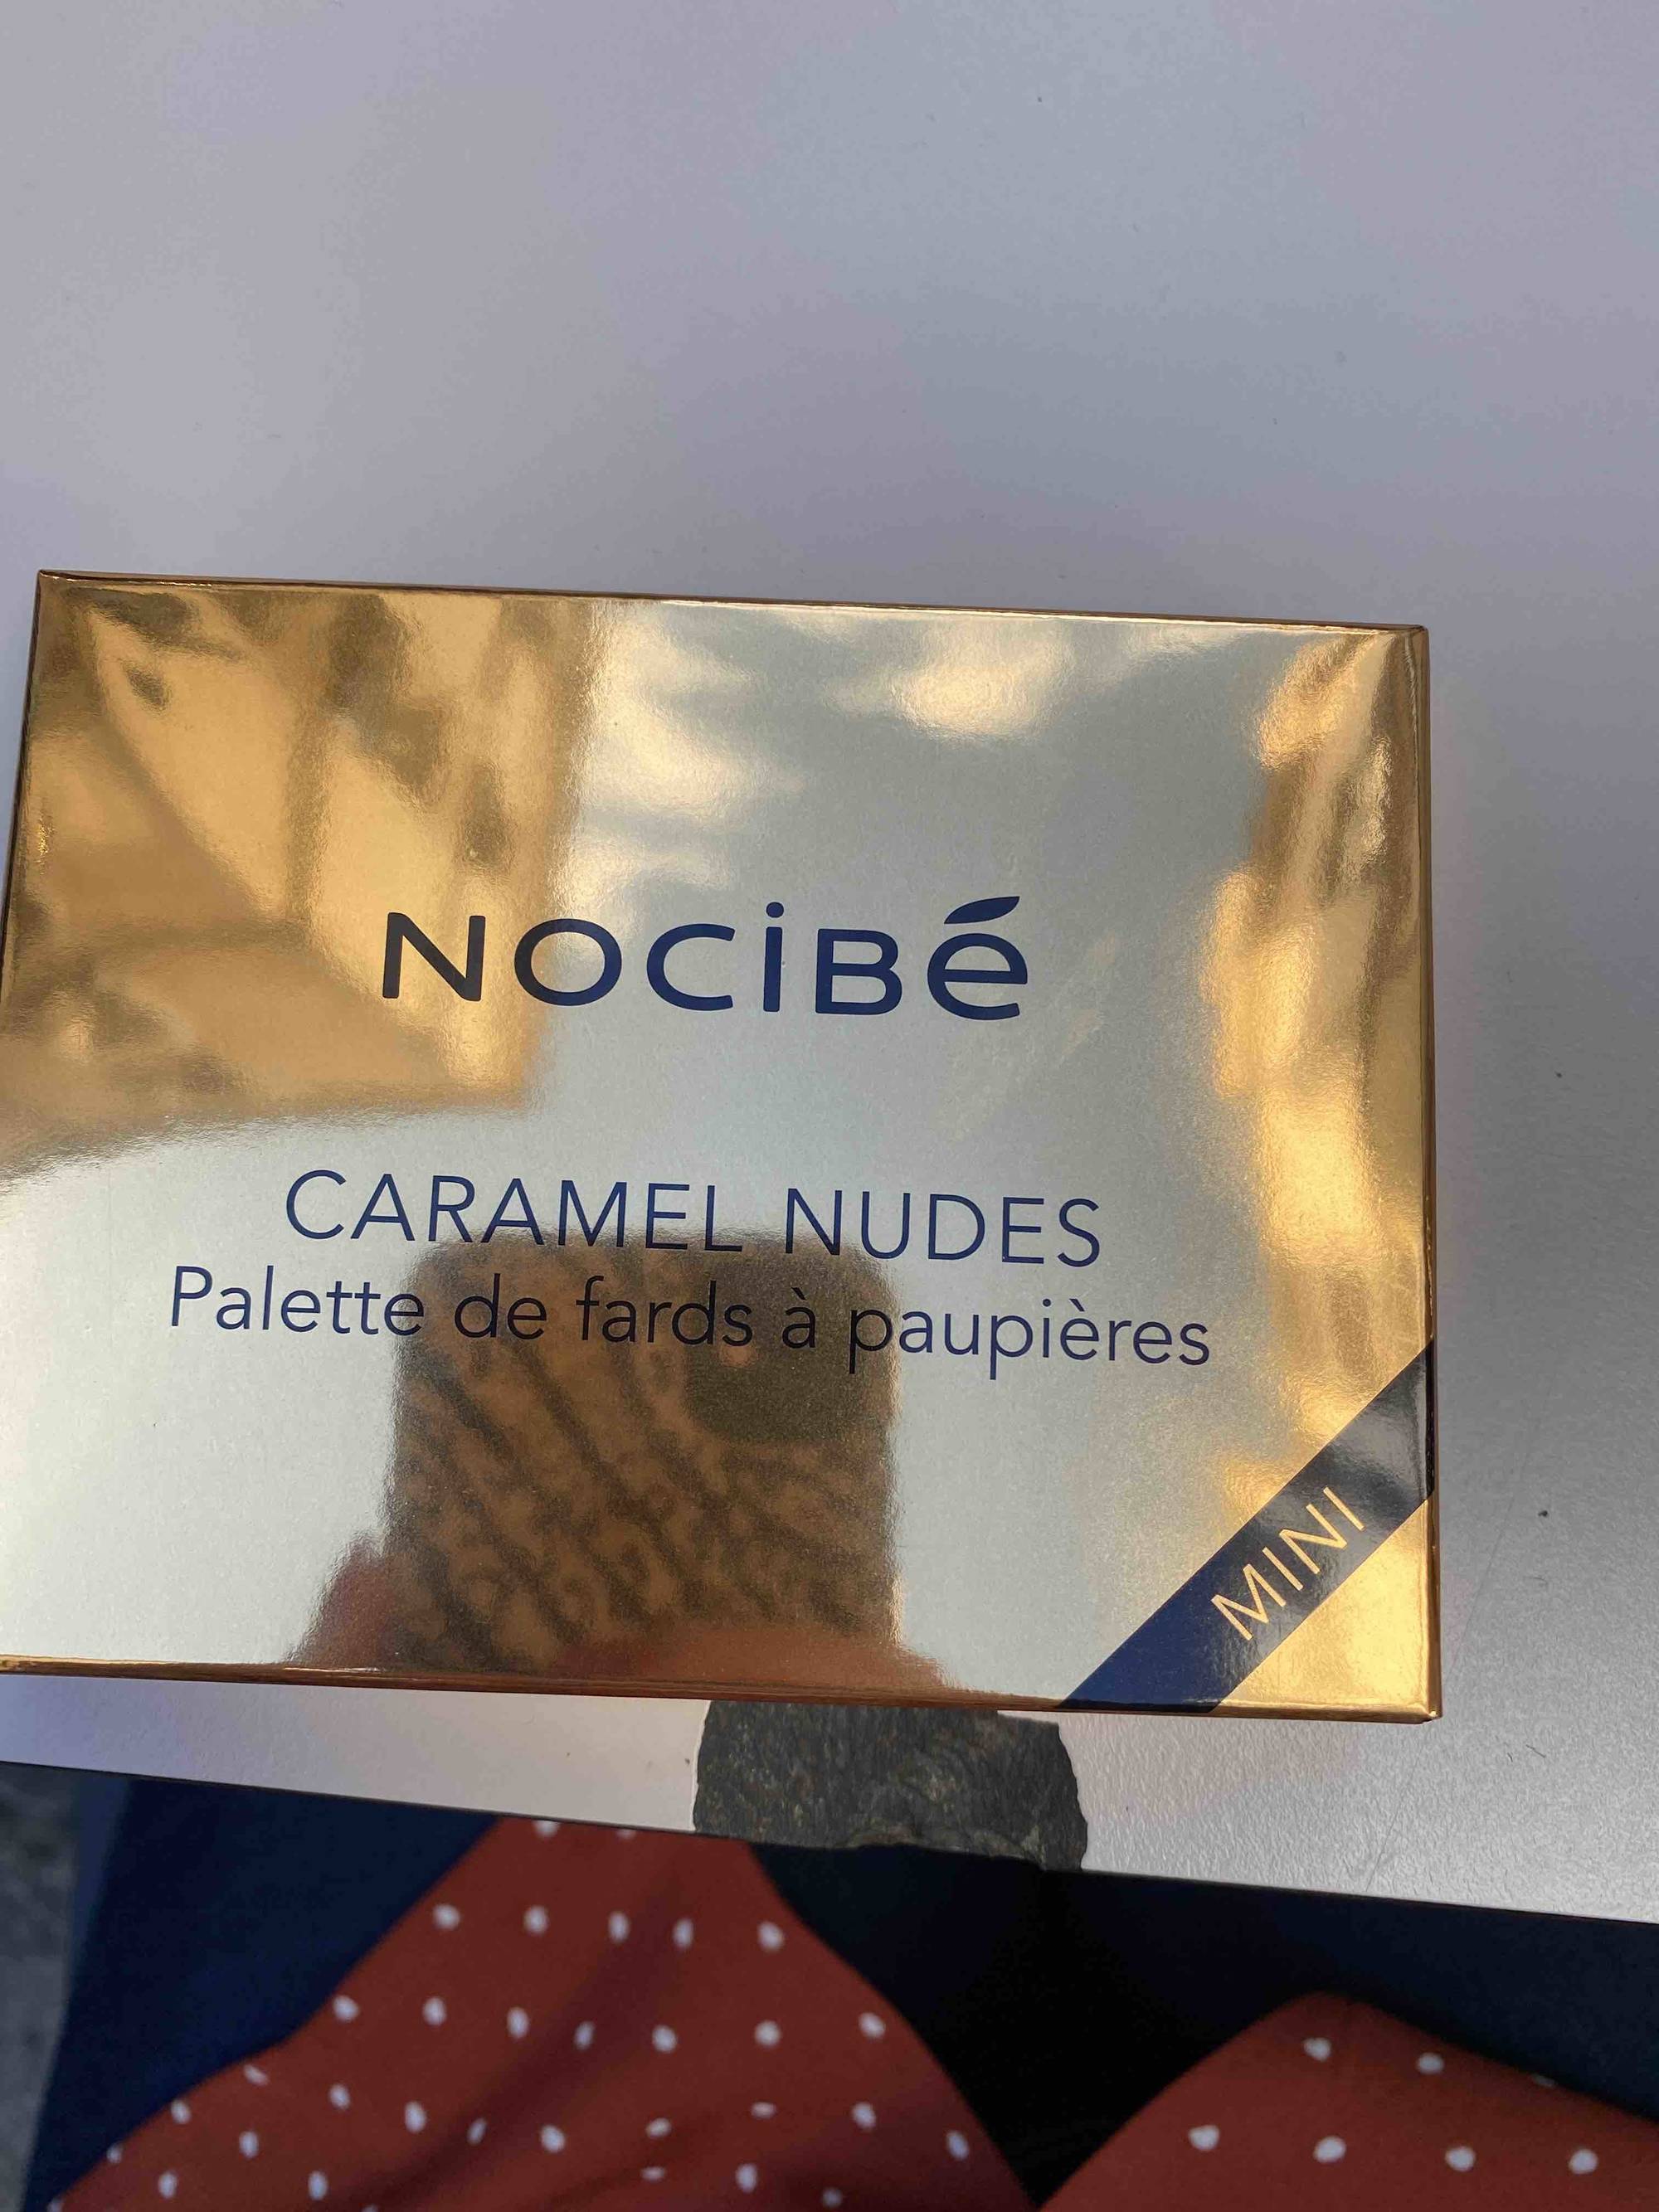 NOCIBÉ - Caramel nudes - Mini palette de fards à paupières